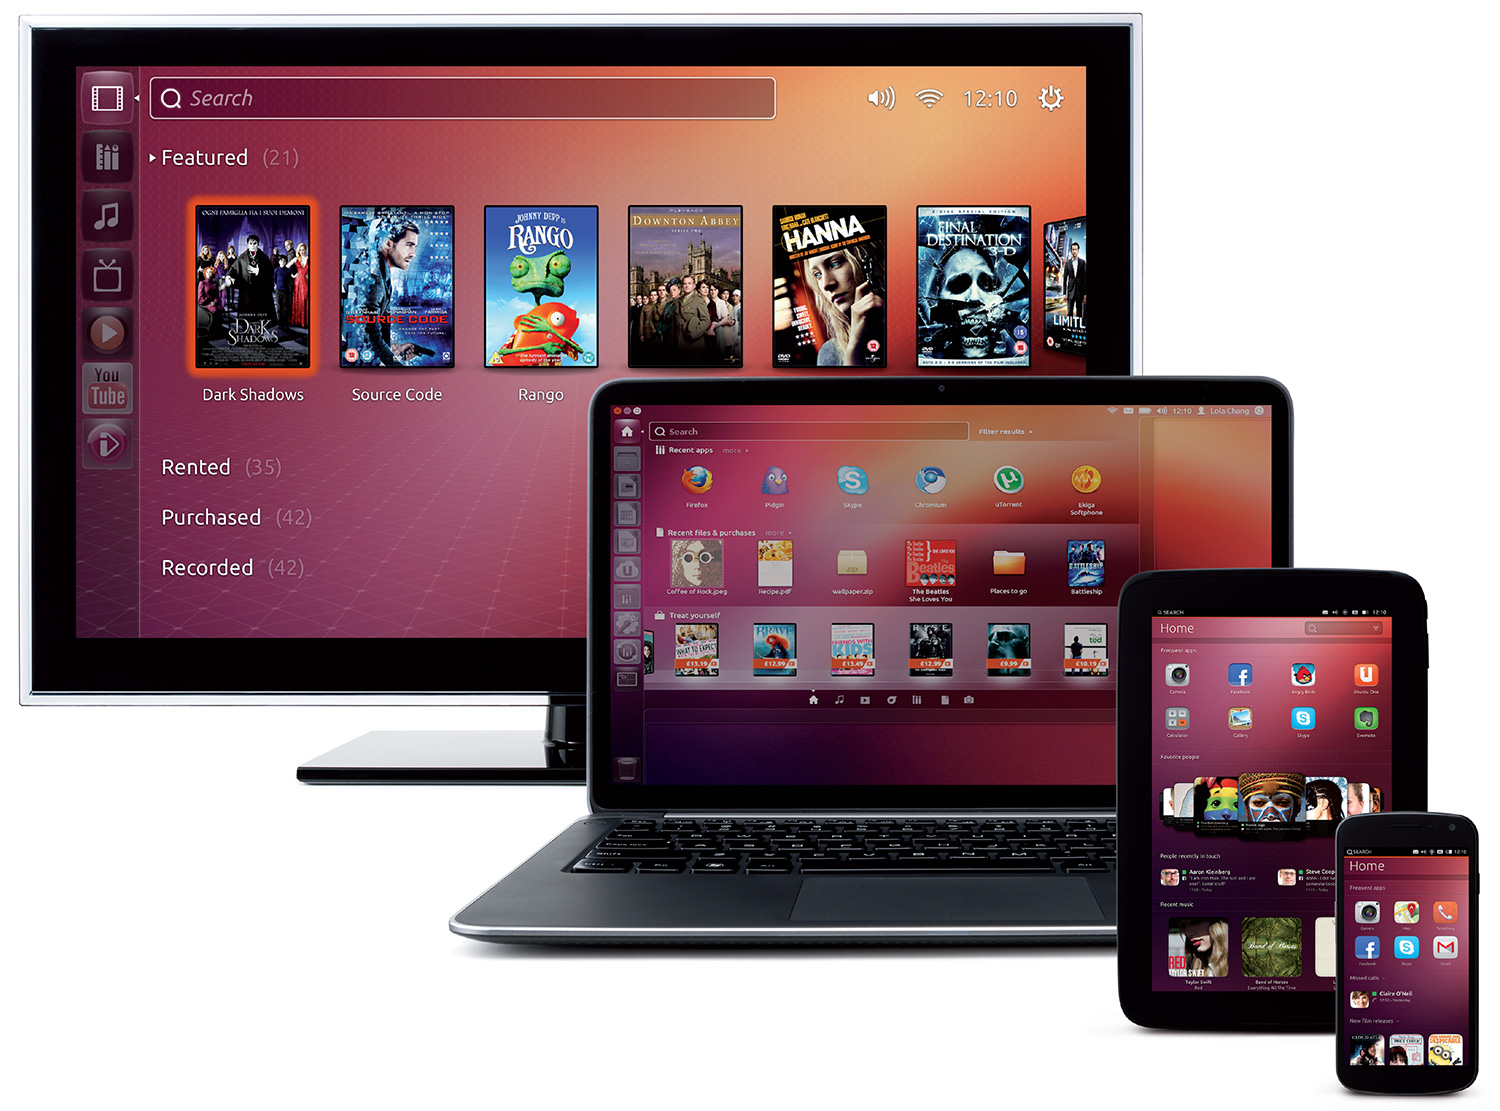 ubuntu tv pc smartphone tablet - Canonical releases Ubuntu 14.04